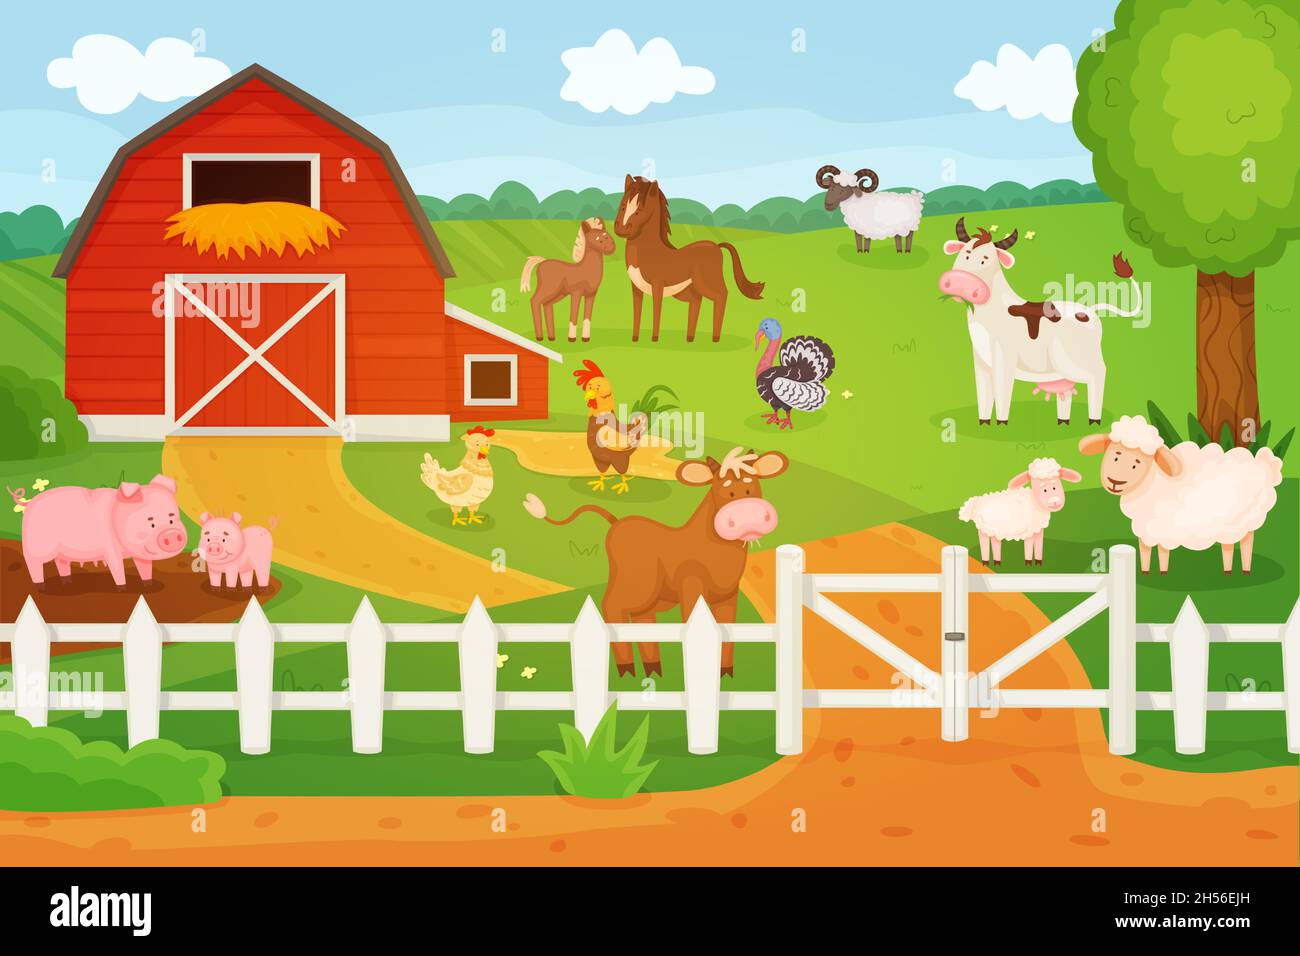 Animales de dibujos animados que viven en la granja, vaca, oveja, pollo.  Paisaje rural con personajes de granero y animal, estilo de vida rural  ilustración vectorial. Ganado doméstico, paisaje al aire libre